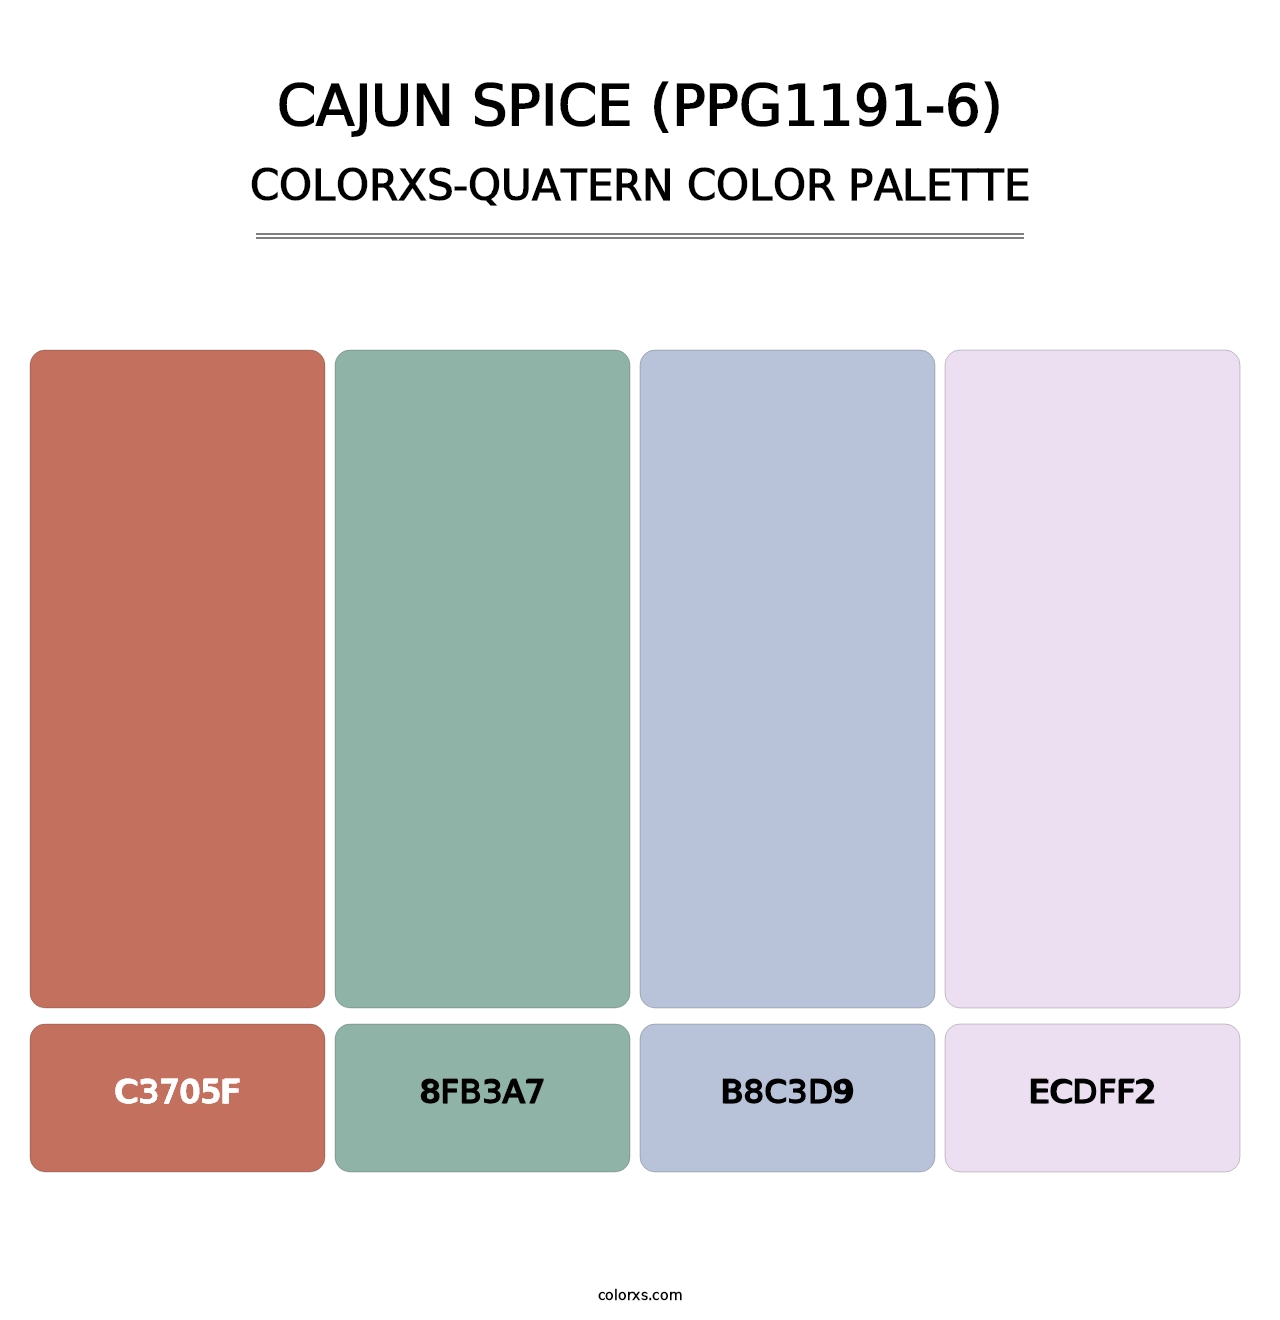 Cajun Spice (PPG1191-6) - Colorxs Quatern Palette